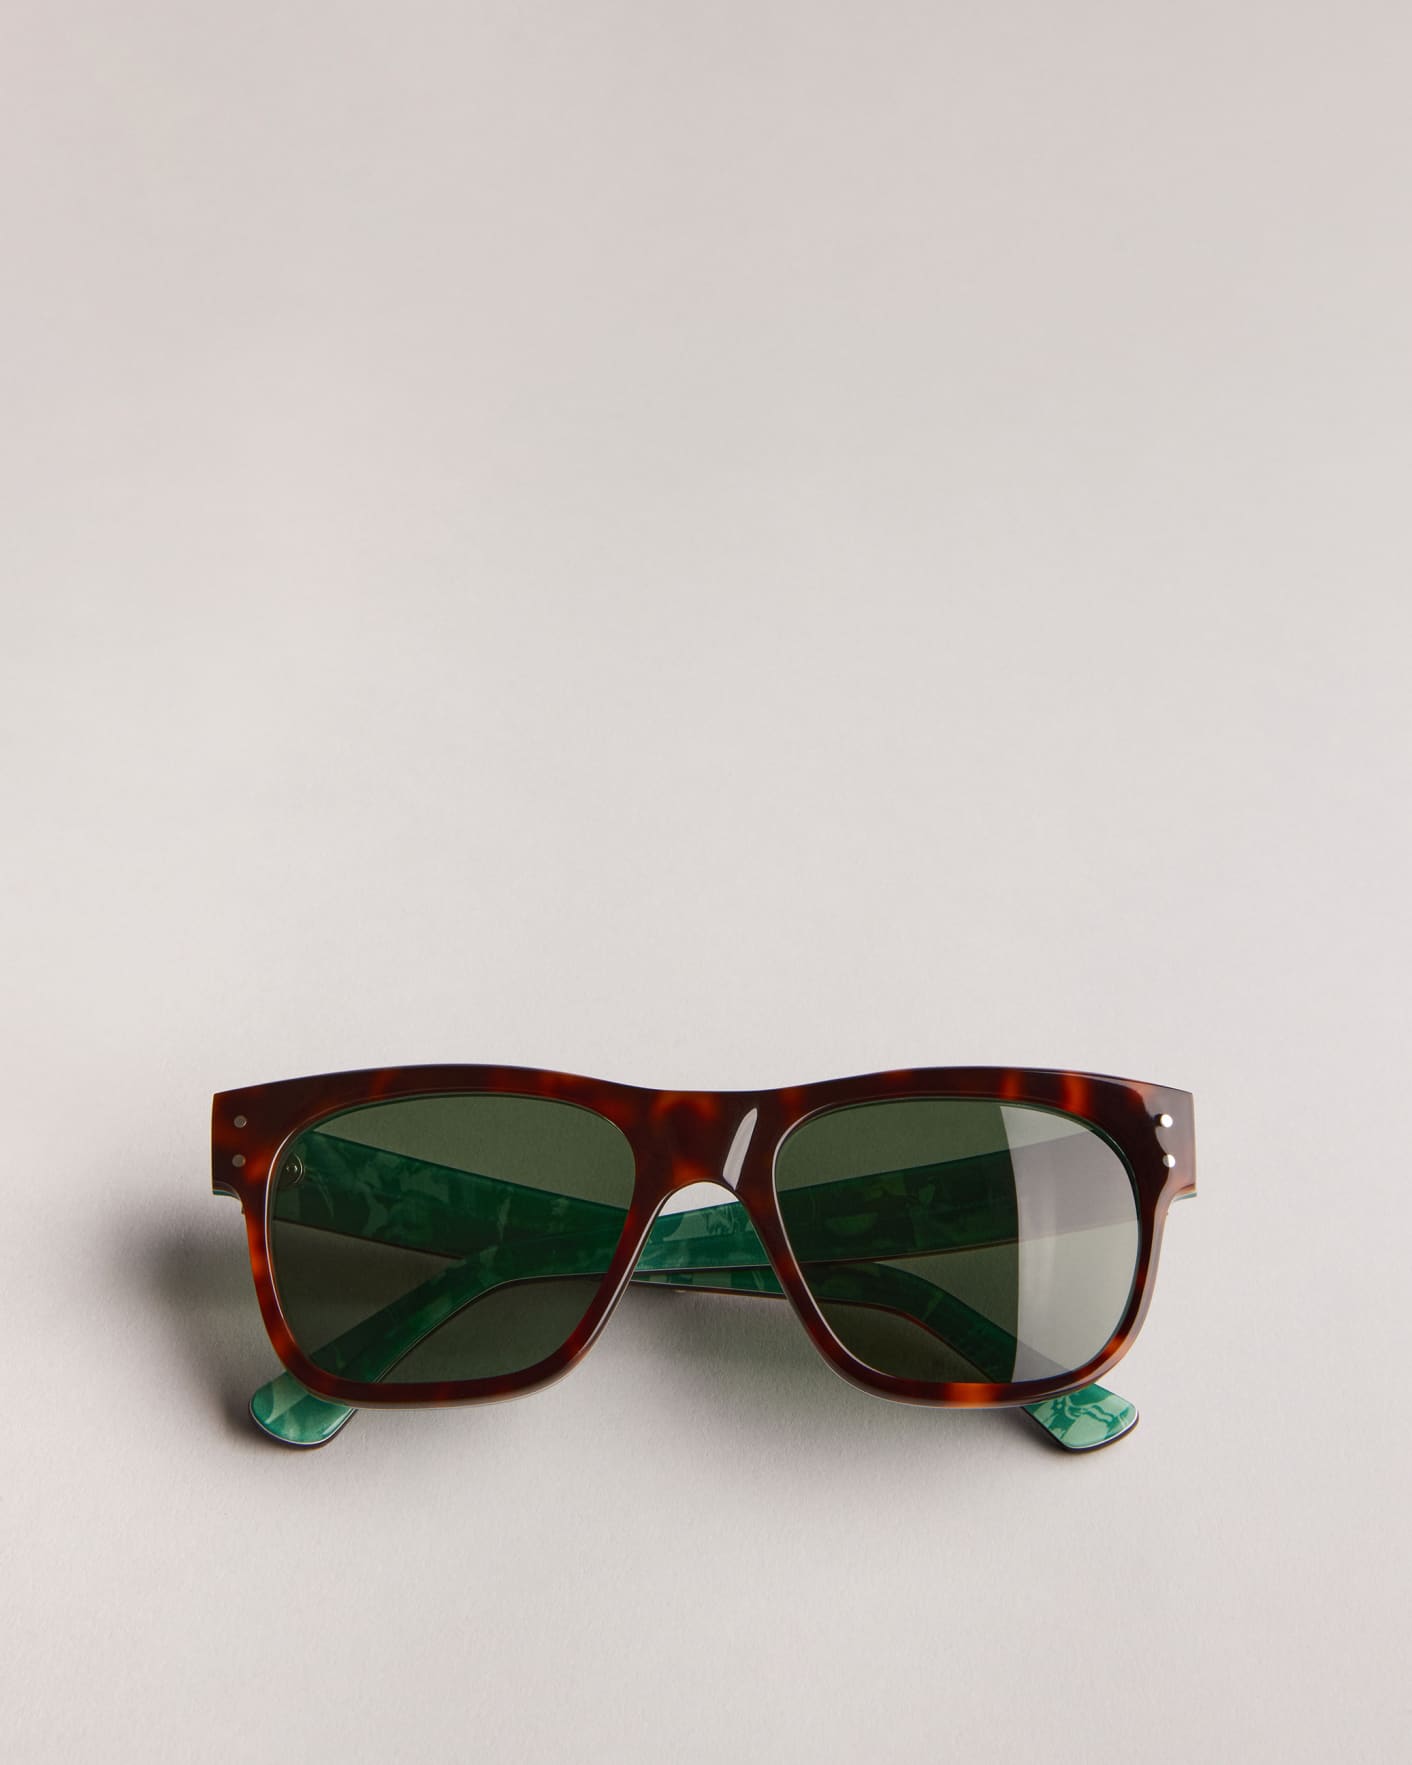 LORD - TRTOISHELL | Sunglasses | Ted Baker UK